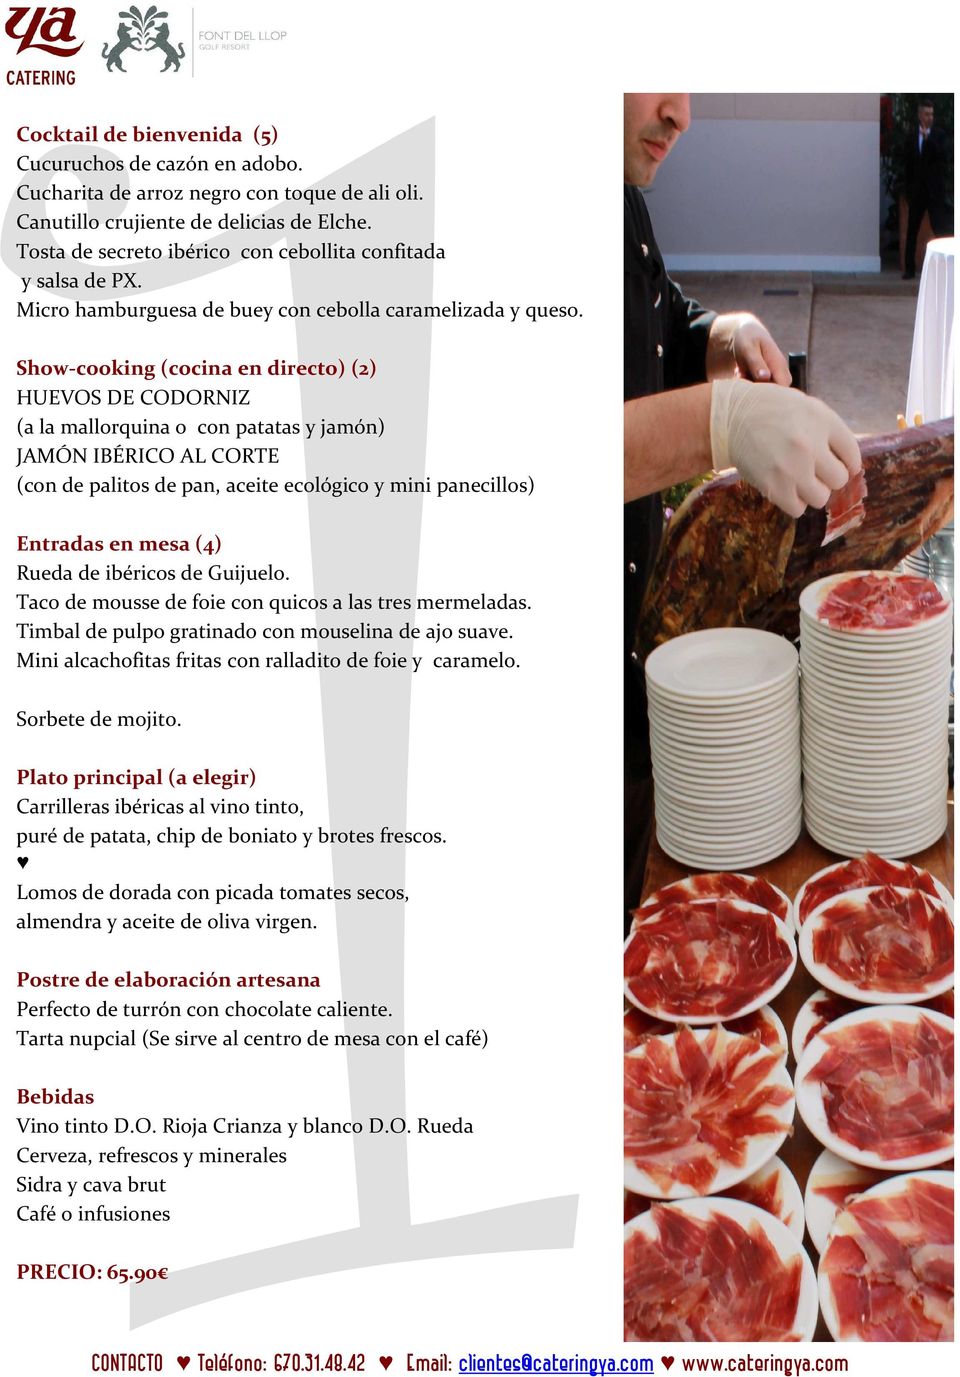 Show-cooking (cocina en directo) (2) HUEVOS DE CODORNIZ (a la mallorquina o con patatas y jamón) JAMÓN IBÉRICO AL CORTE (con de palitos de pan, aceite ecológico y mini panecillos) Entradas en mesa